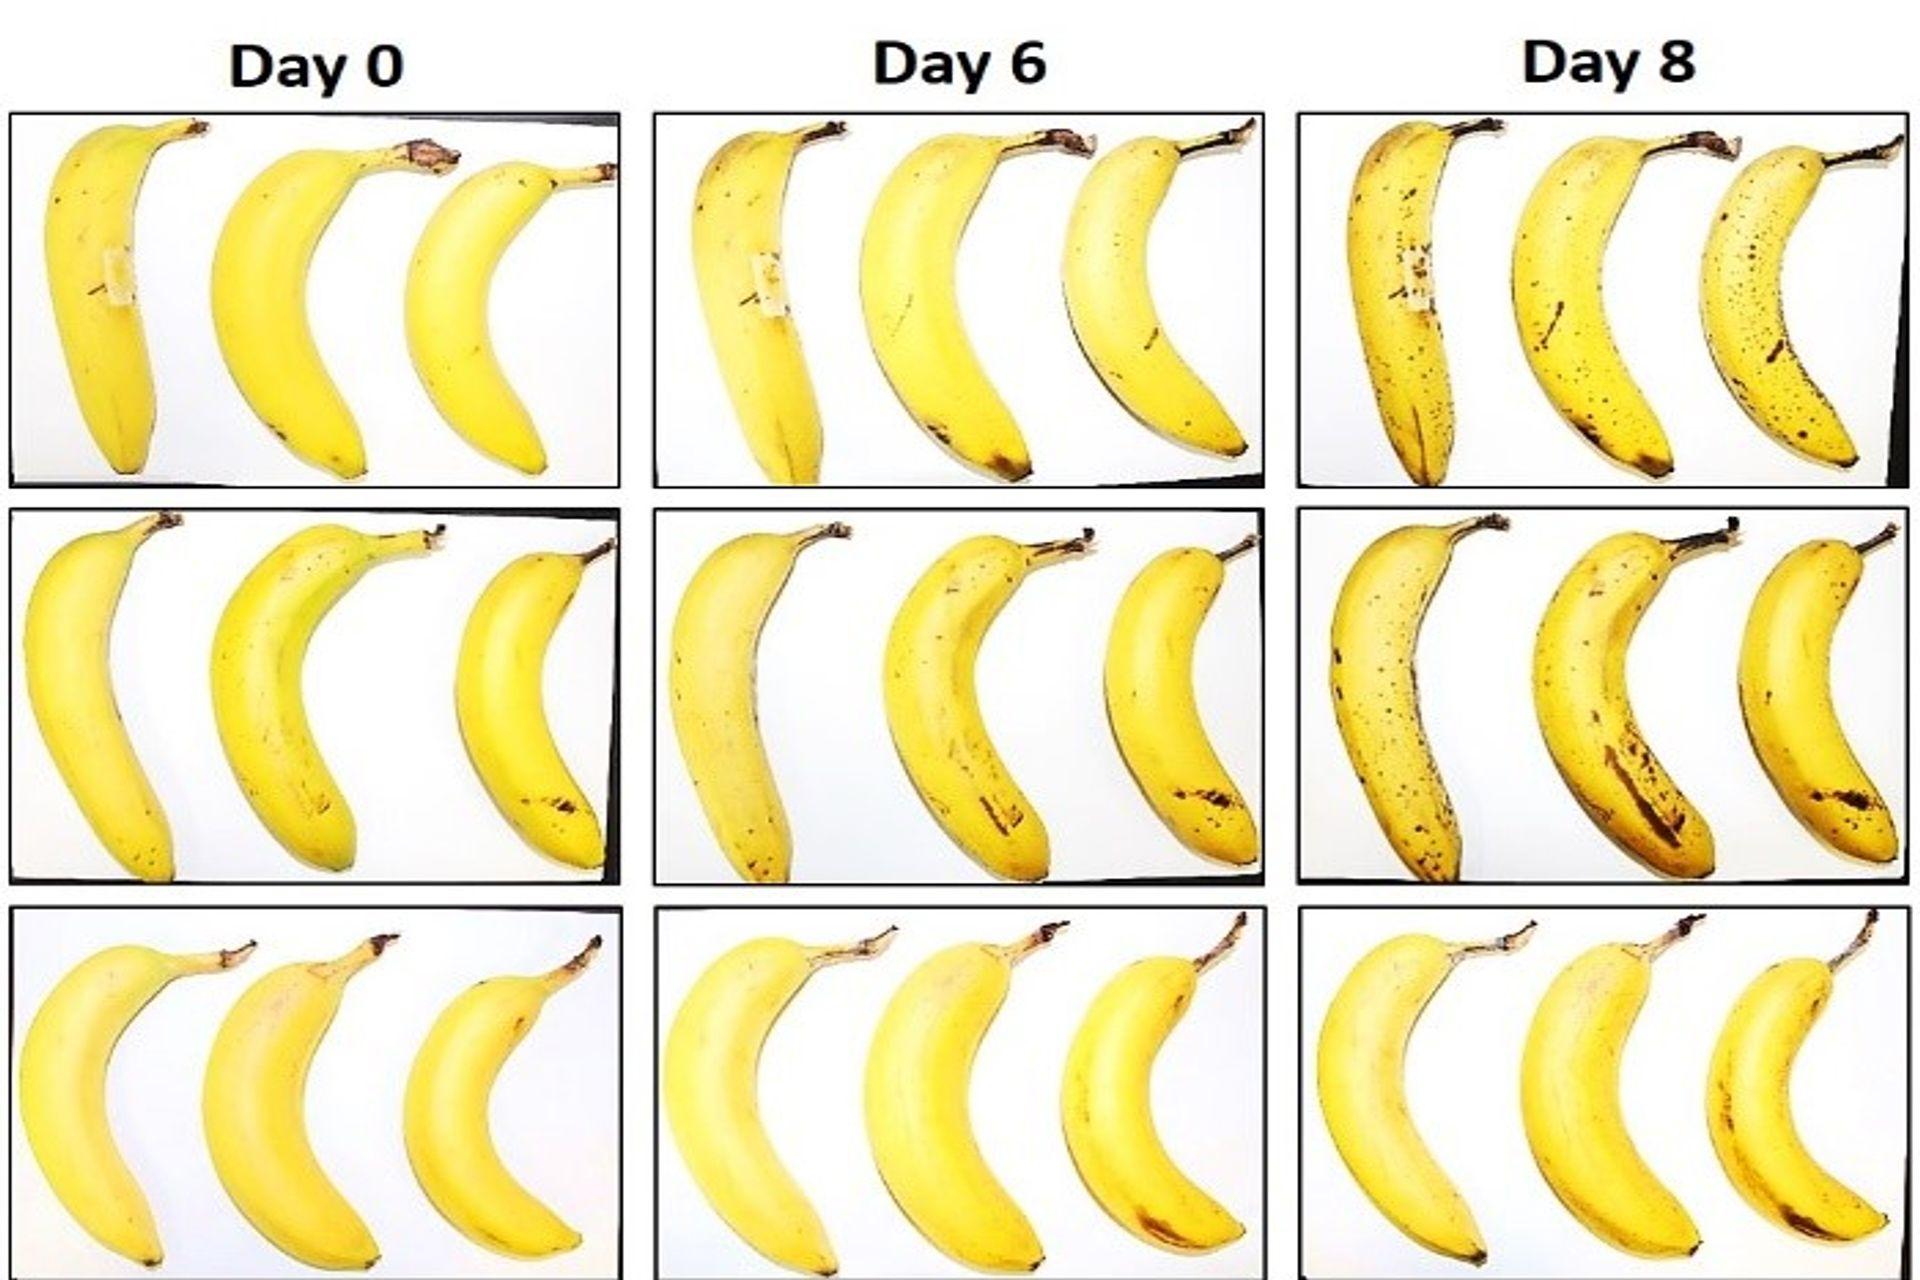 Тры бананы, падвергнутыя EMPA і Lidl Switzerland кансервацыйным выпрабаванням з абгорткай з валакністай цэлюлозы і без яе праз нуль, 6 і 8 дзён